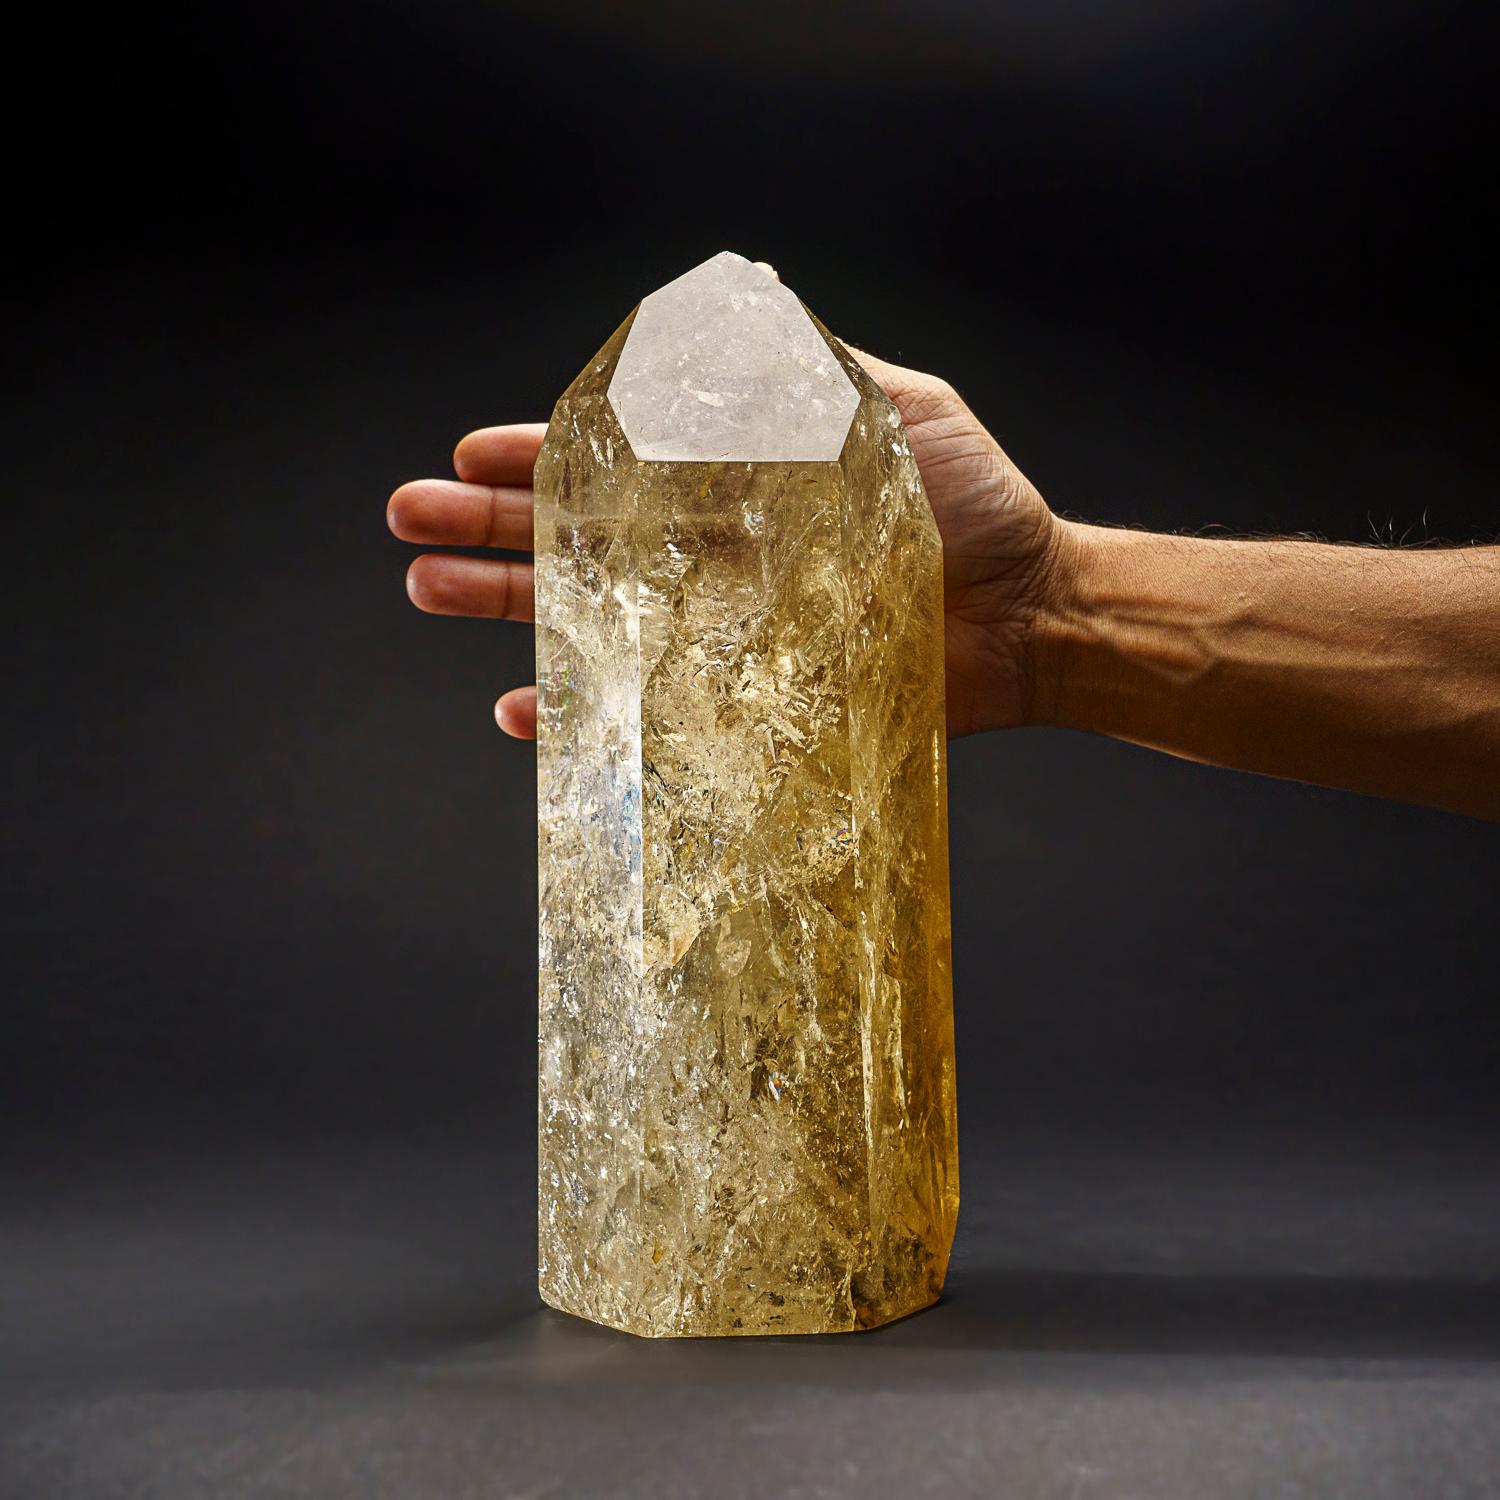 Brésilien Point de cristal de citrine authentique de qualité musée du Brésil (10 livres)